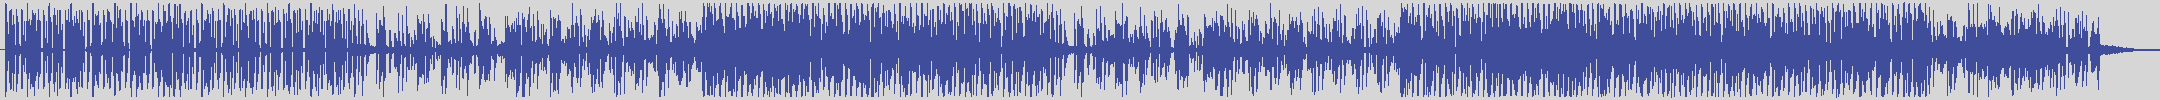 nf_boyz_records [NFY082] Bora Bora Cocktail Room - Song Del Mar [Original Mix] audio wave form